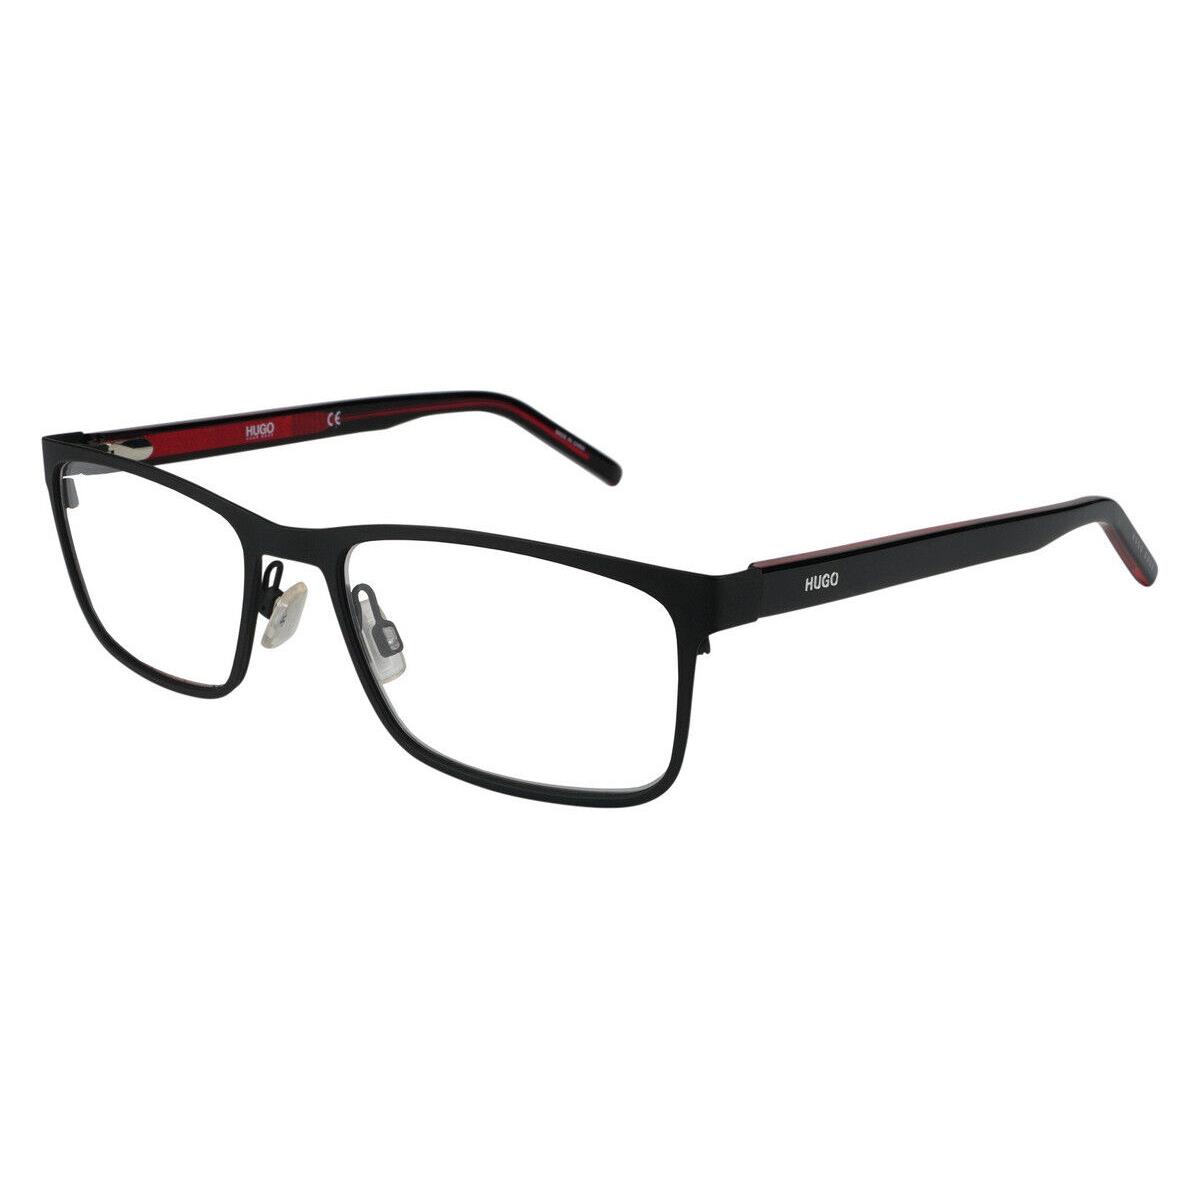 Hugo Boss 1005 Eyeglasses Rectangle 55mm